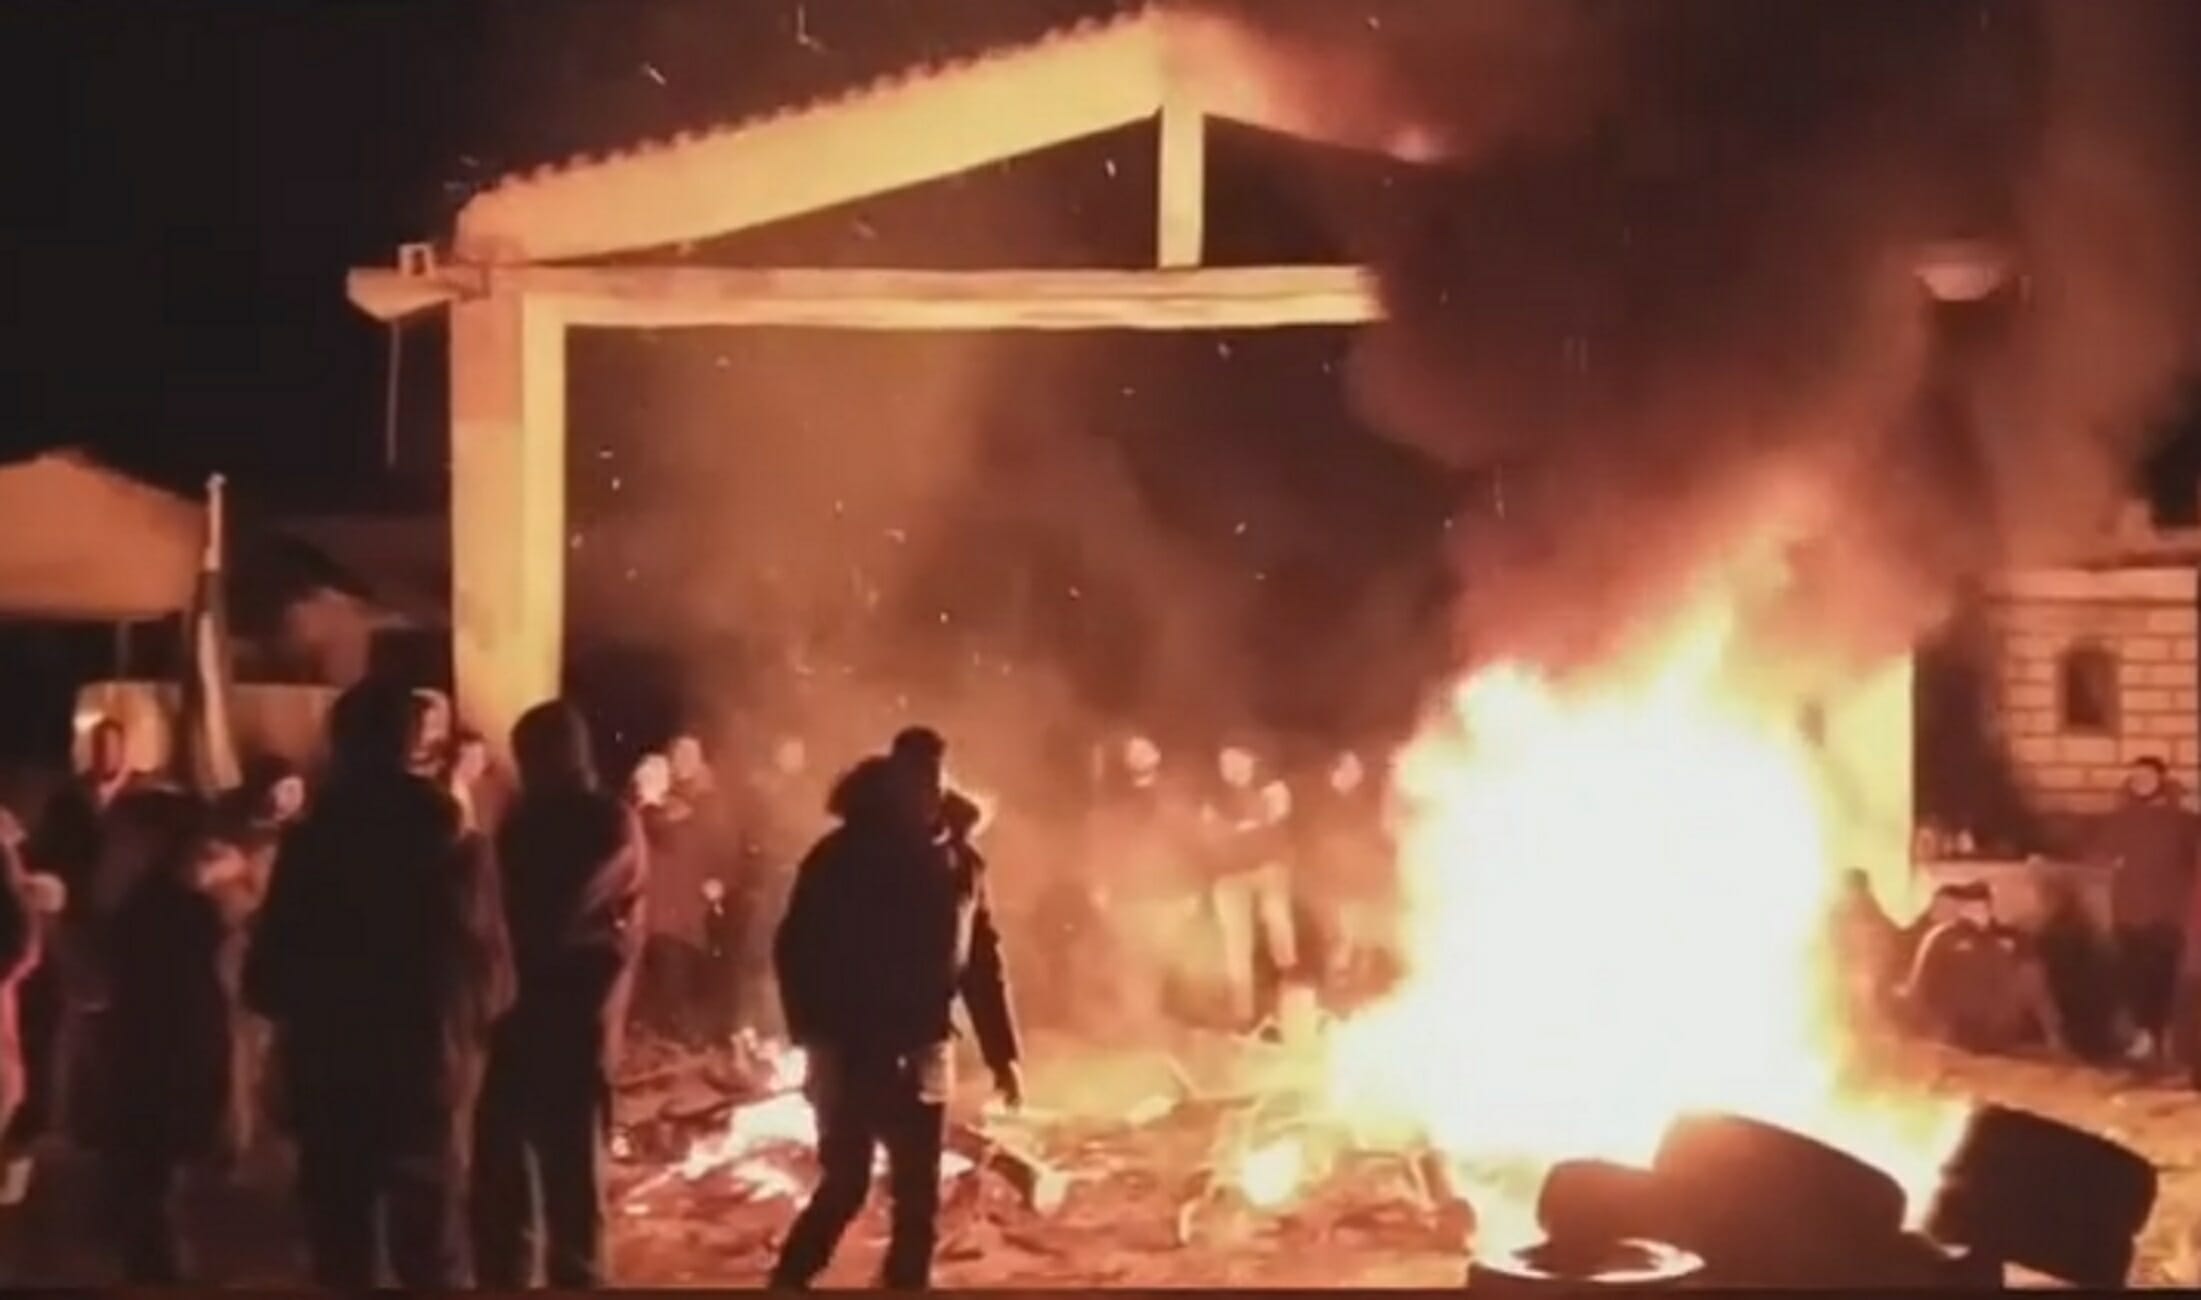 Σέρρες: Συγκέντρωση διαμαρτυρίας για το κλειστό κέντρο πριν το ξημέρωμα! Φωτιές και συνθήματα (Βίντεο)